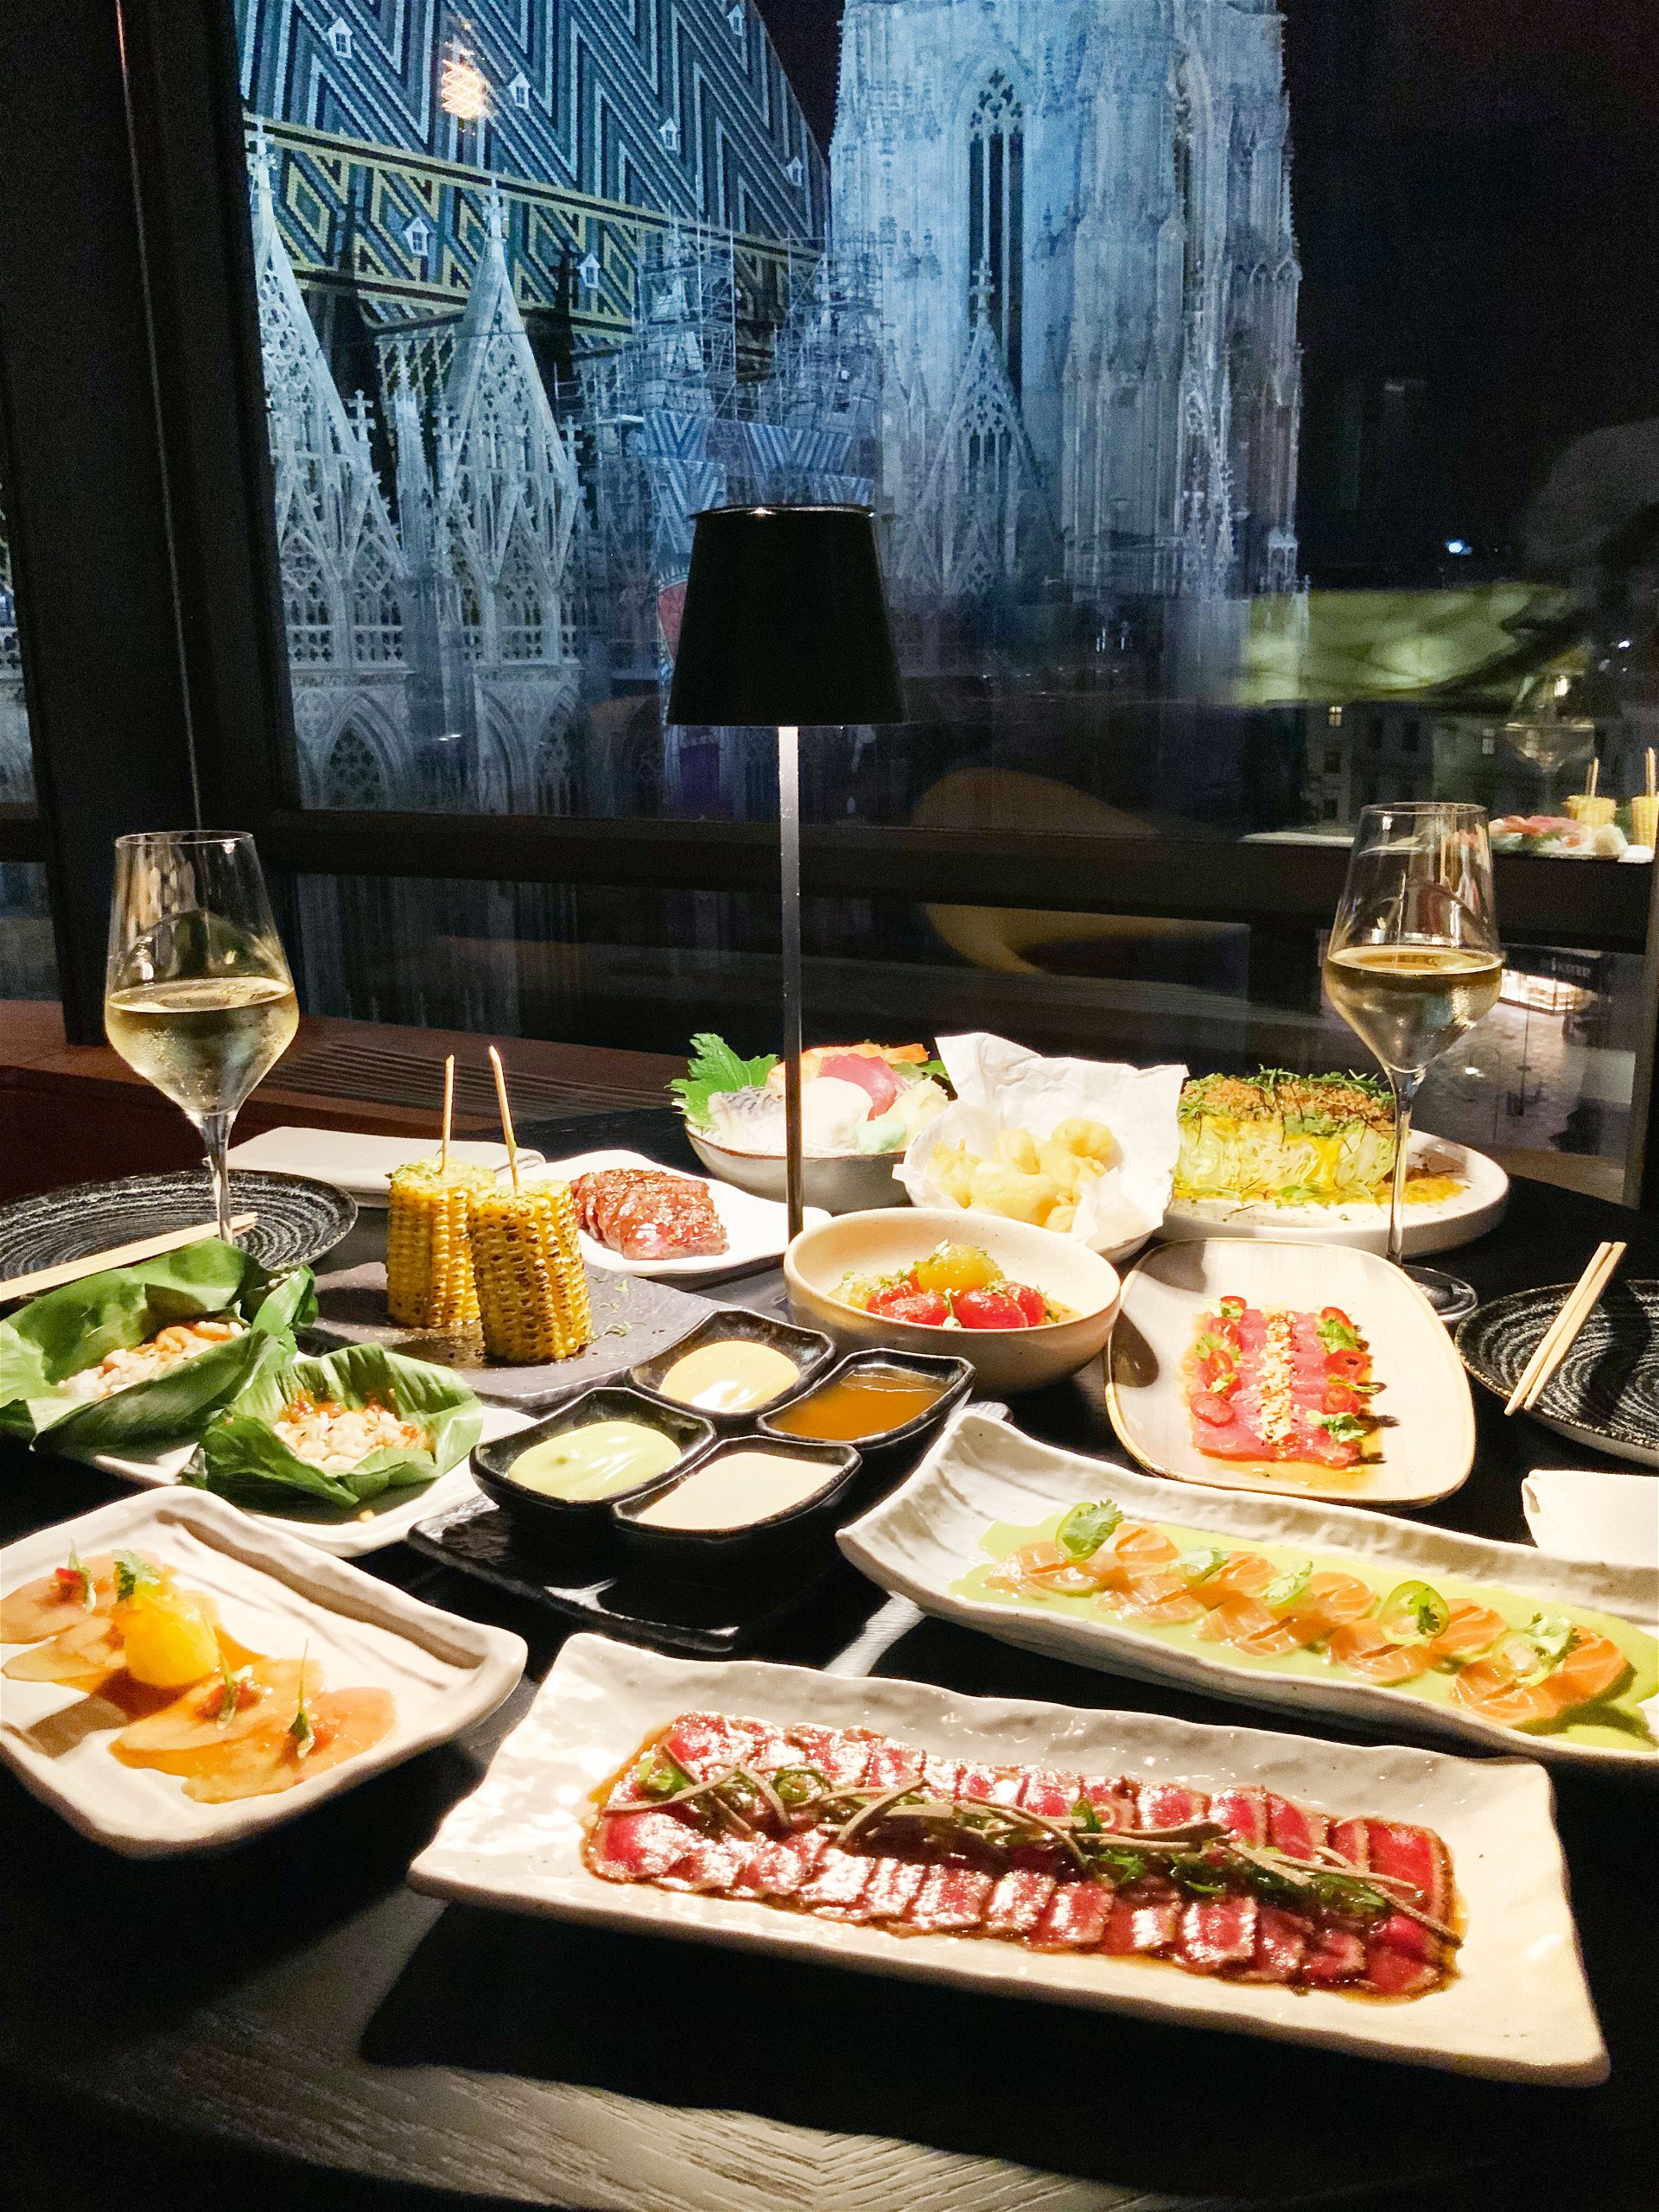 Contemporary Asian Food: Vis-à-vis des Wiener Stephansdoms genießt man Sushi, Gyoza, Bao-Karpfen und weitere asiatische Köstlichkeiten in Spitzenqualität. 